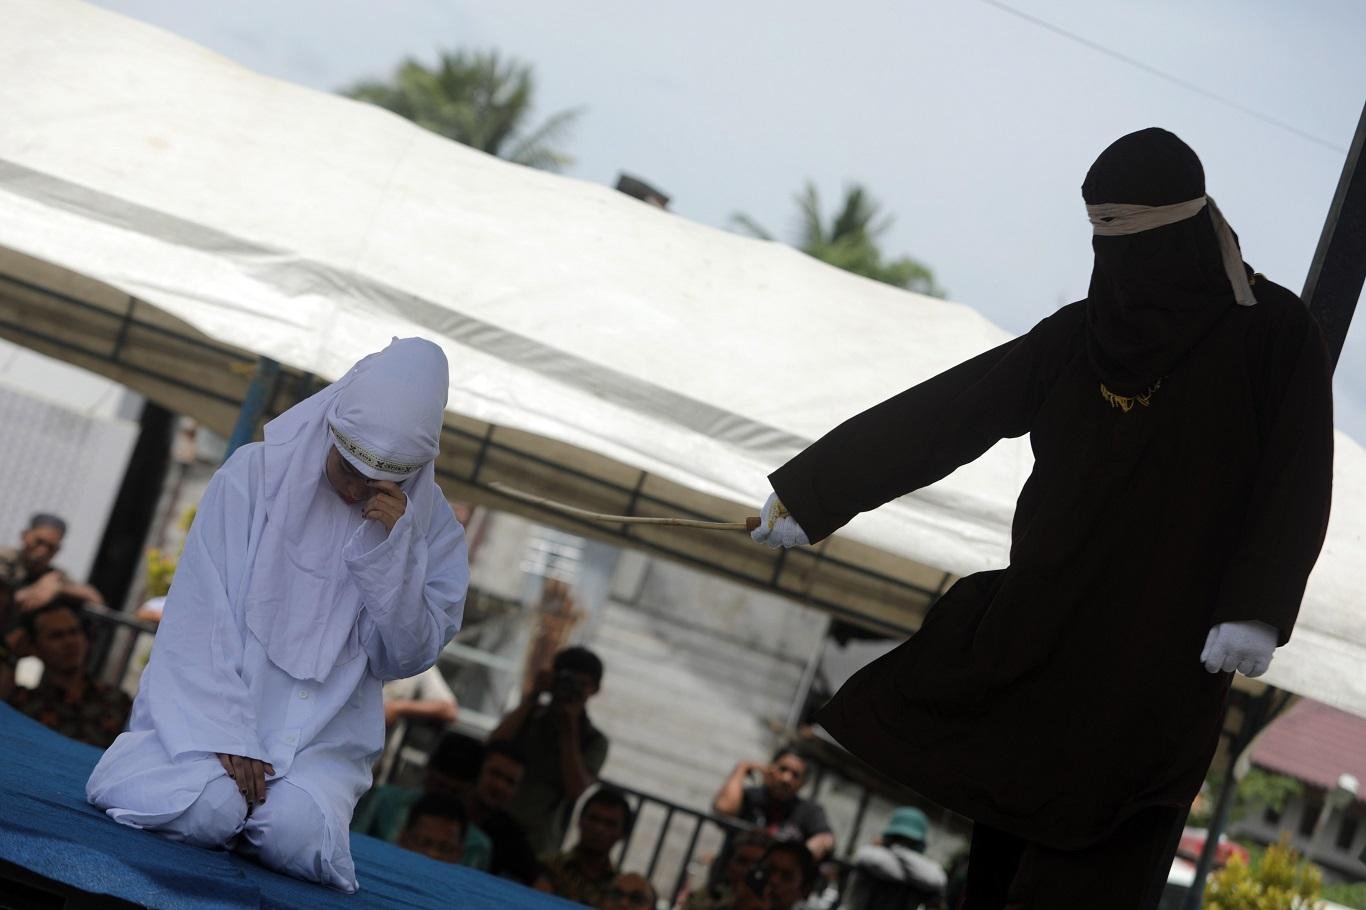 Una mujer de confesión musulmana recibe públicamente azotes con una vara de madera como parte del castigo por romper la ley "sharía" o islámica, que prohíbe mantener relaciones extramaritales. (Foto: EFE)